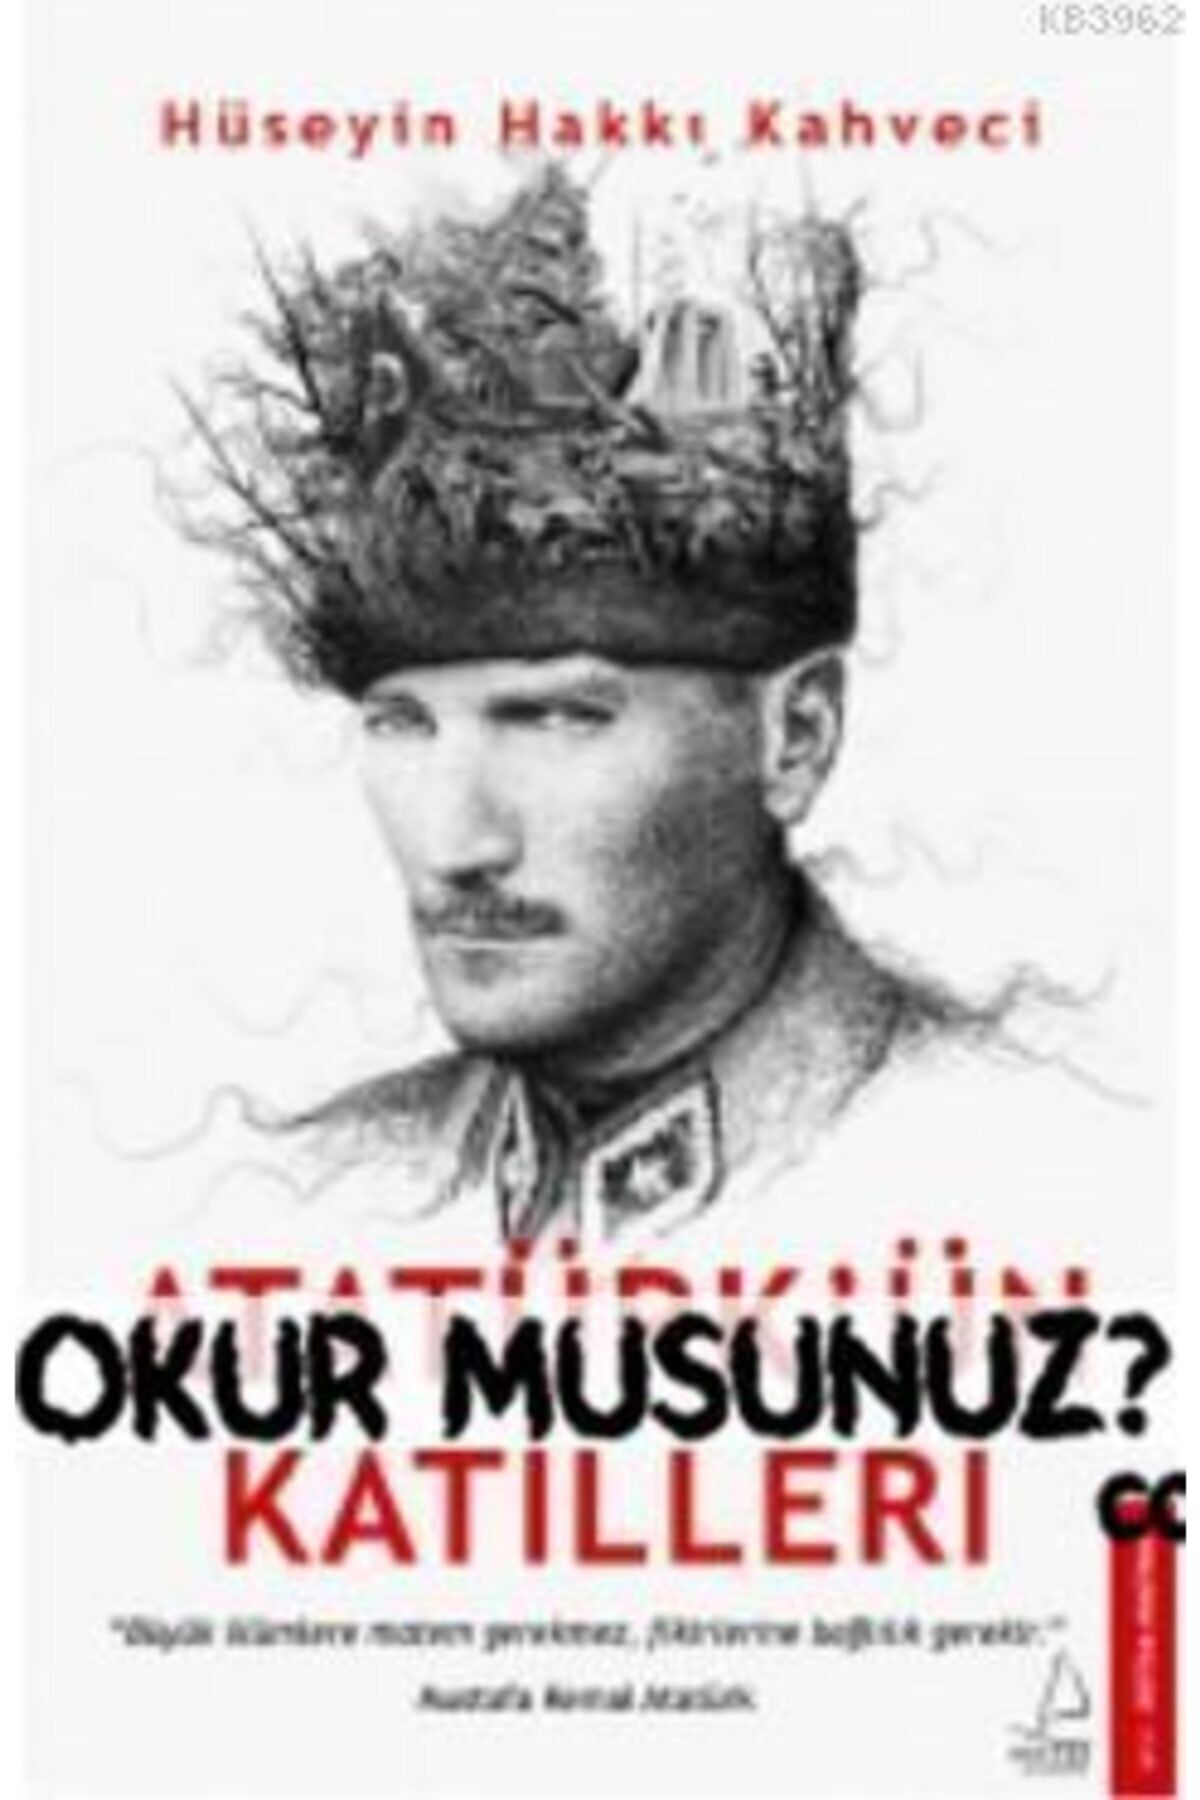 Destek Yayınları Atatürk'ün Katilleri